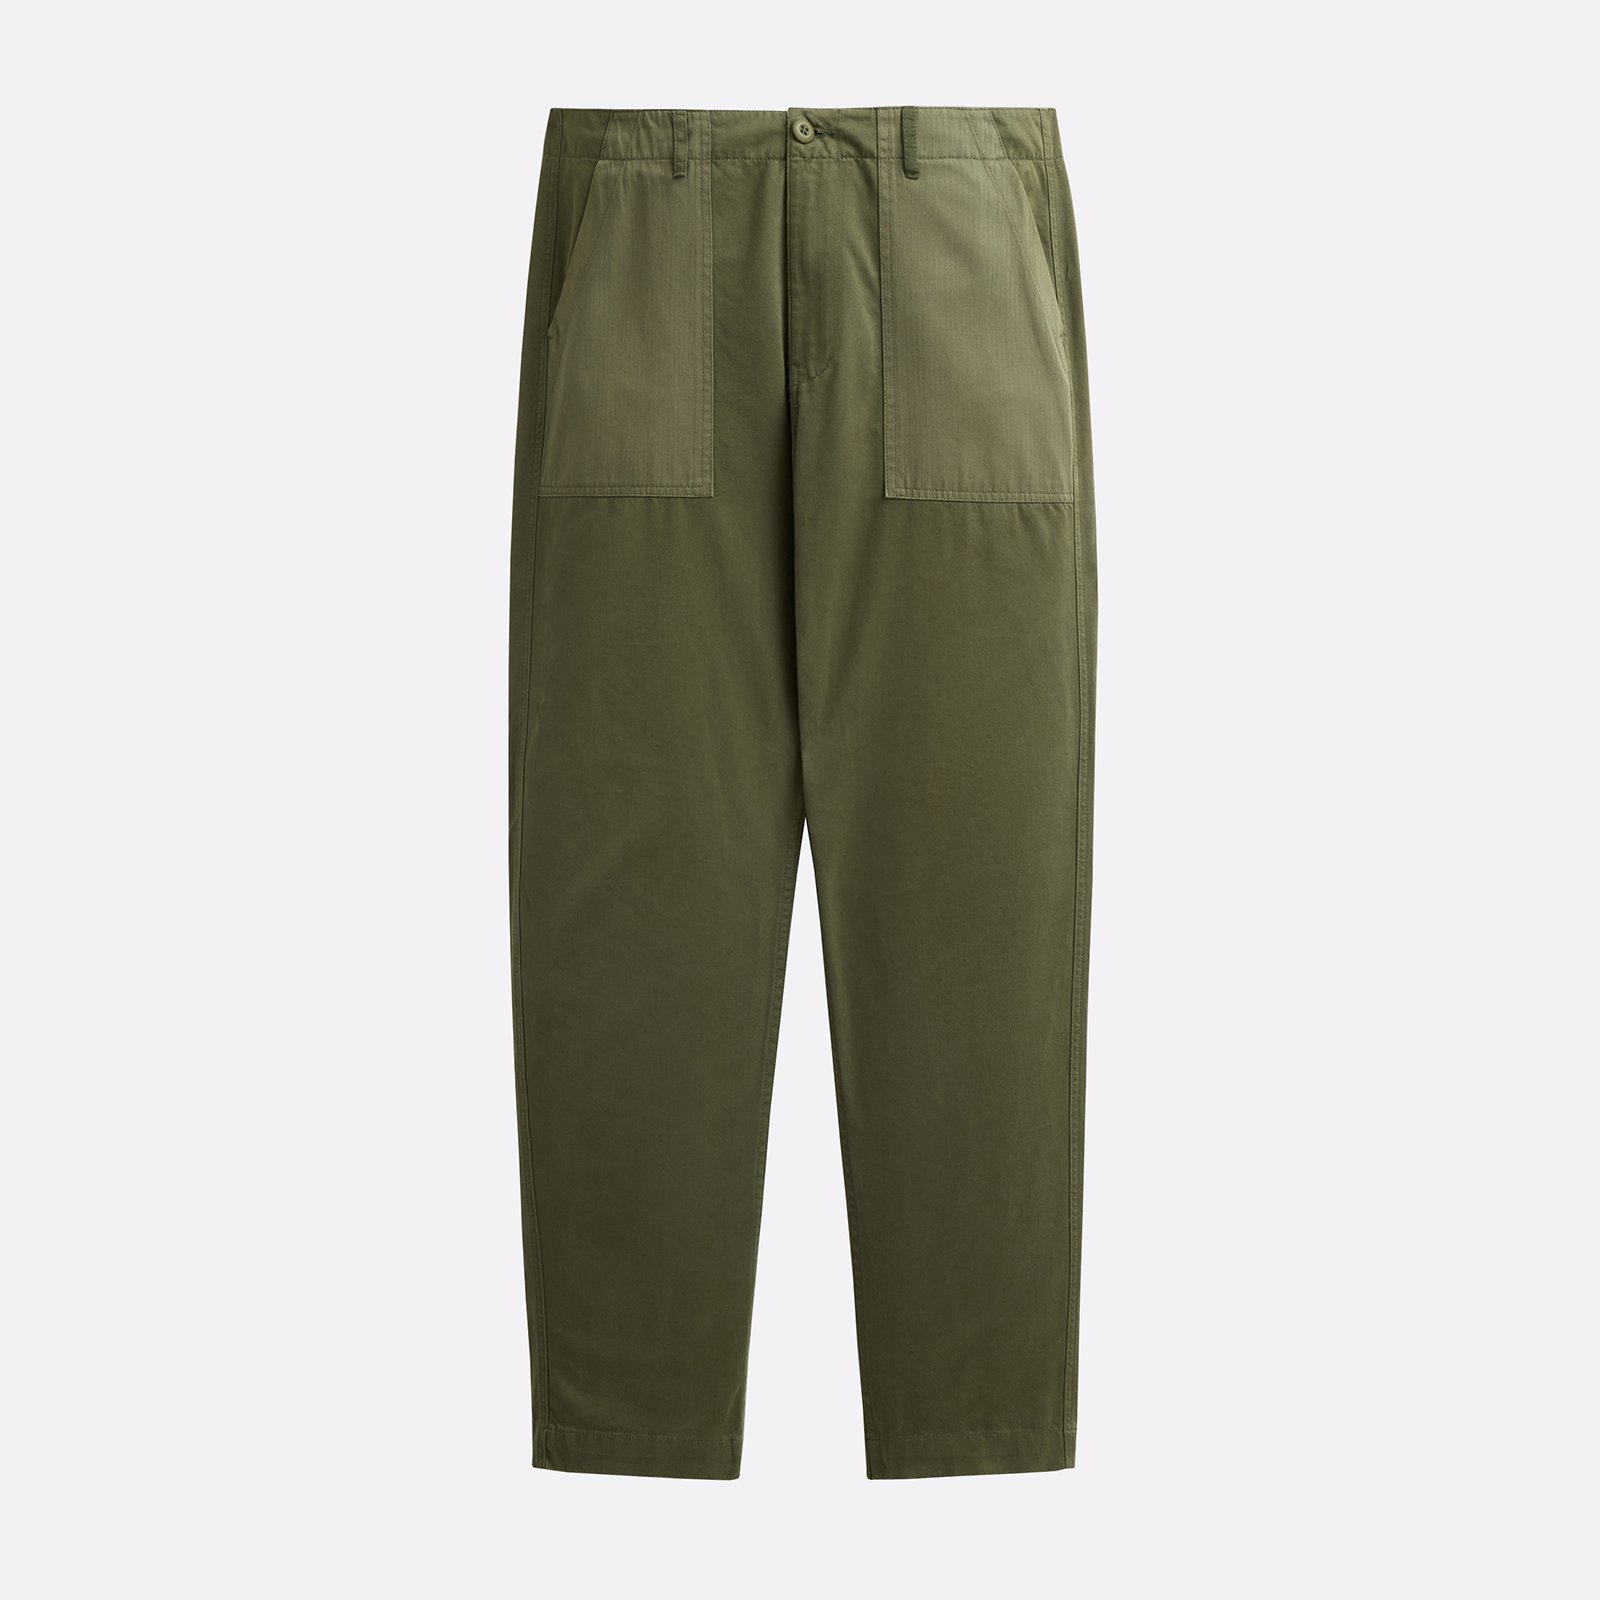 мужские брюки Alpha Industries Fatigue Pant  (MBO52500C1-OG-107-green)  - цена, описание, фото 1